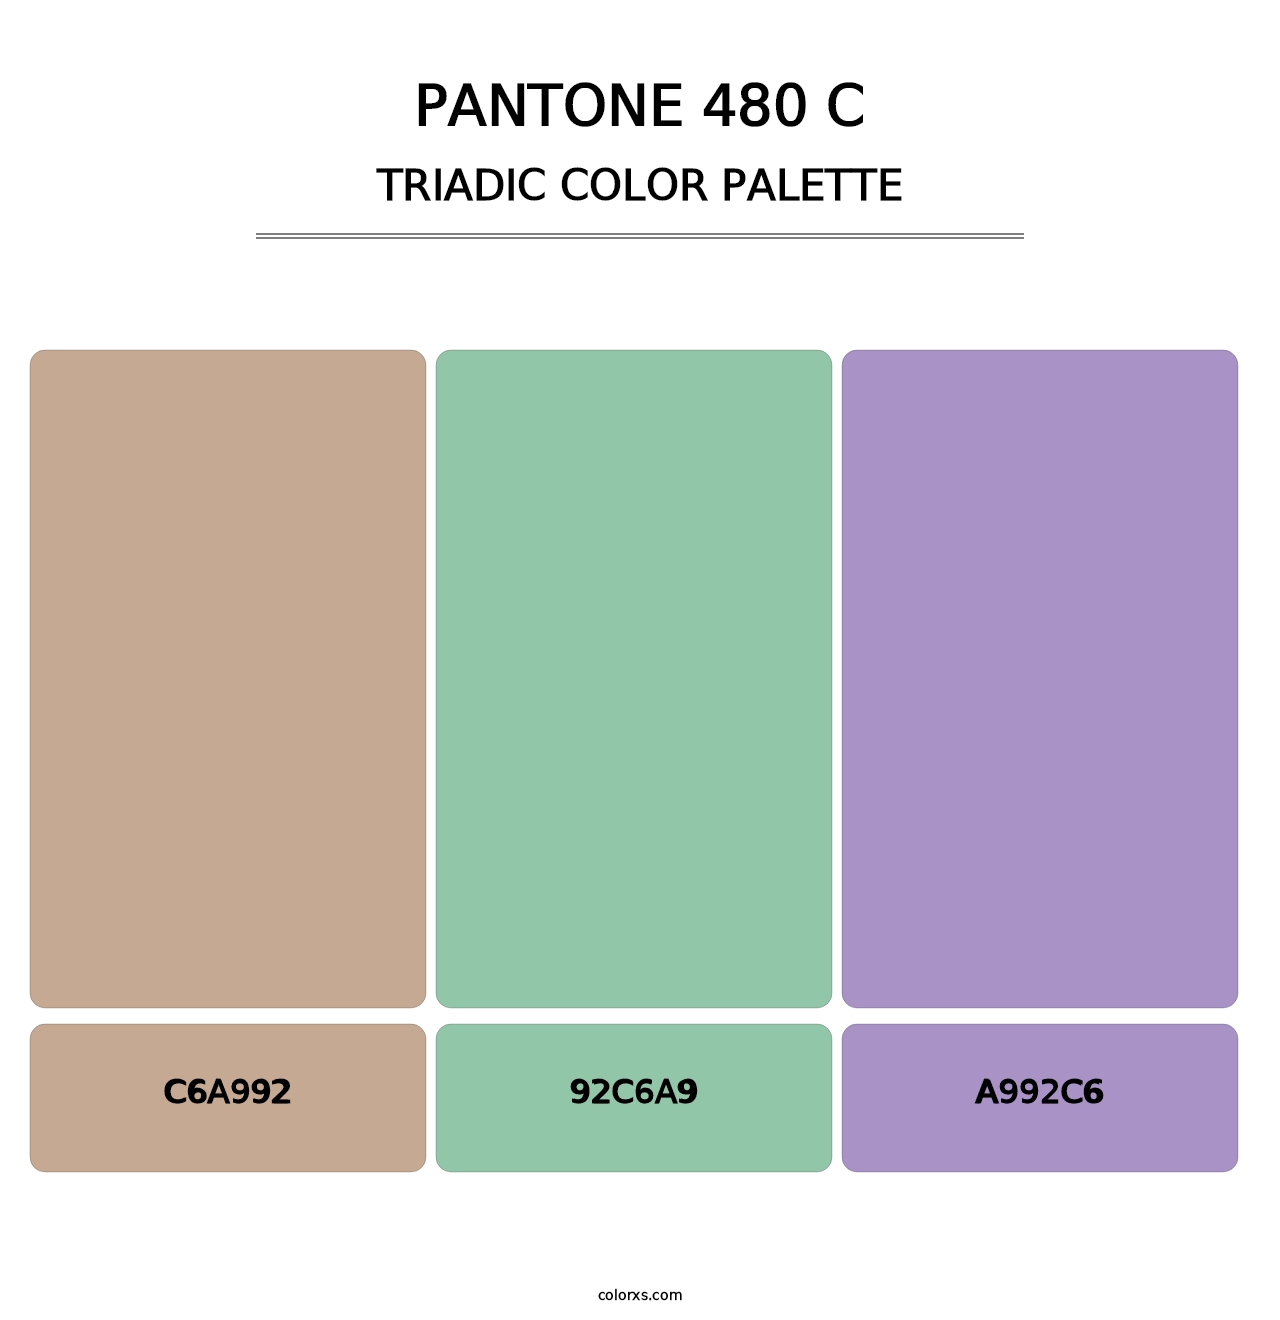 PANTONE 480 C - Triadic Color Palette